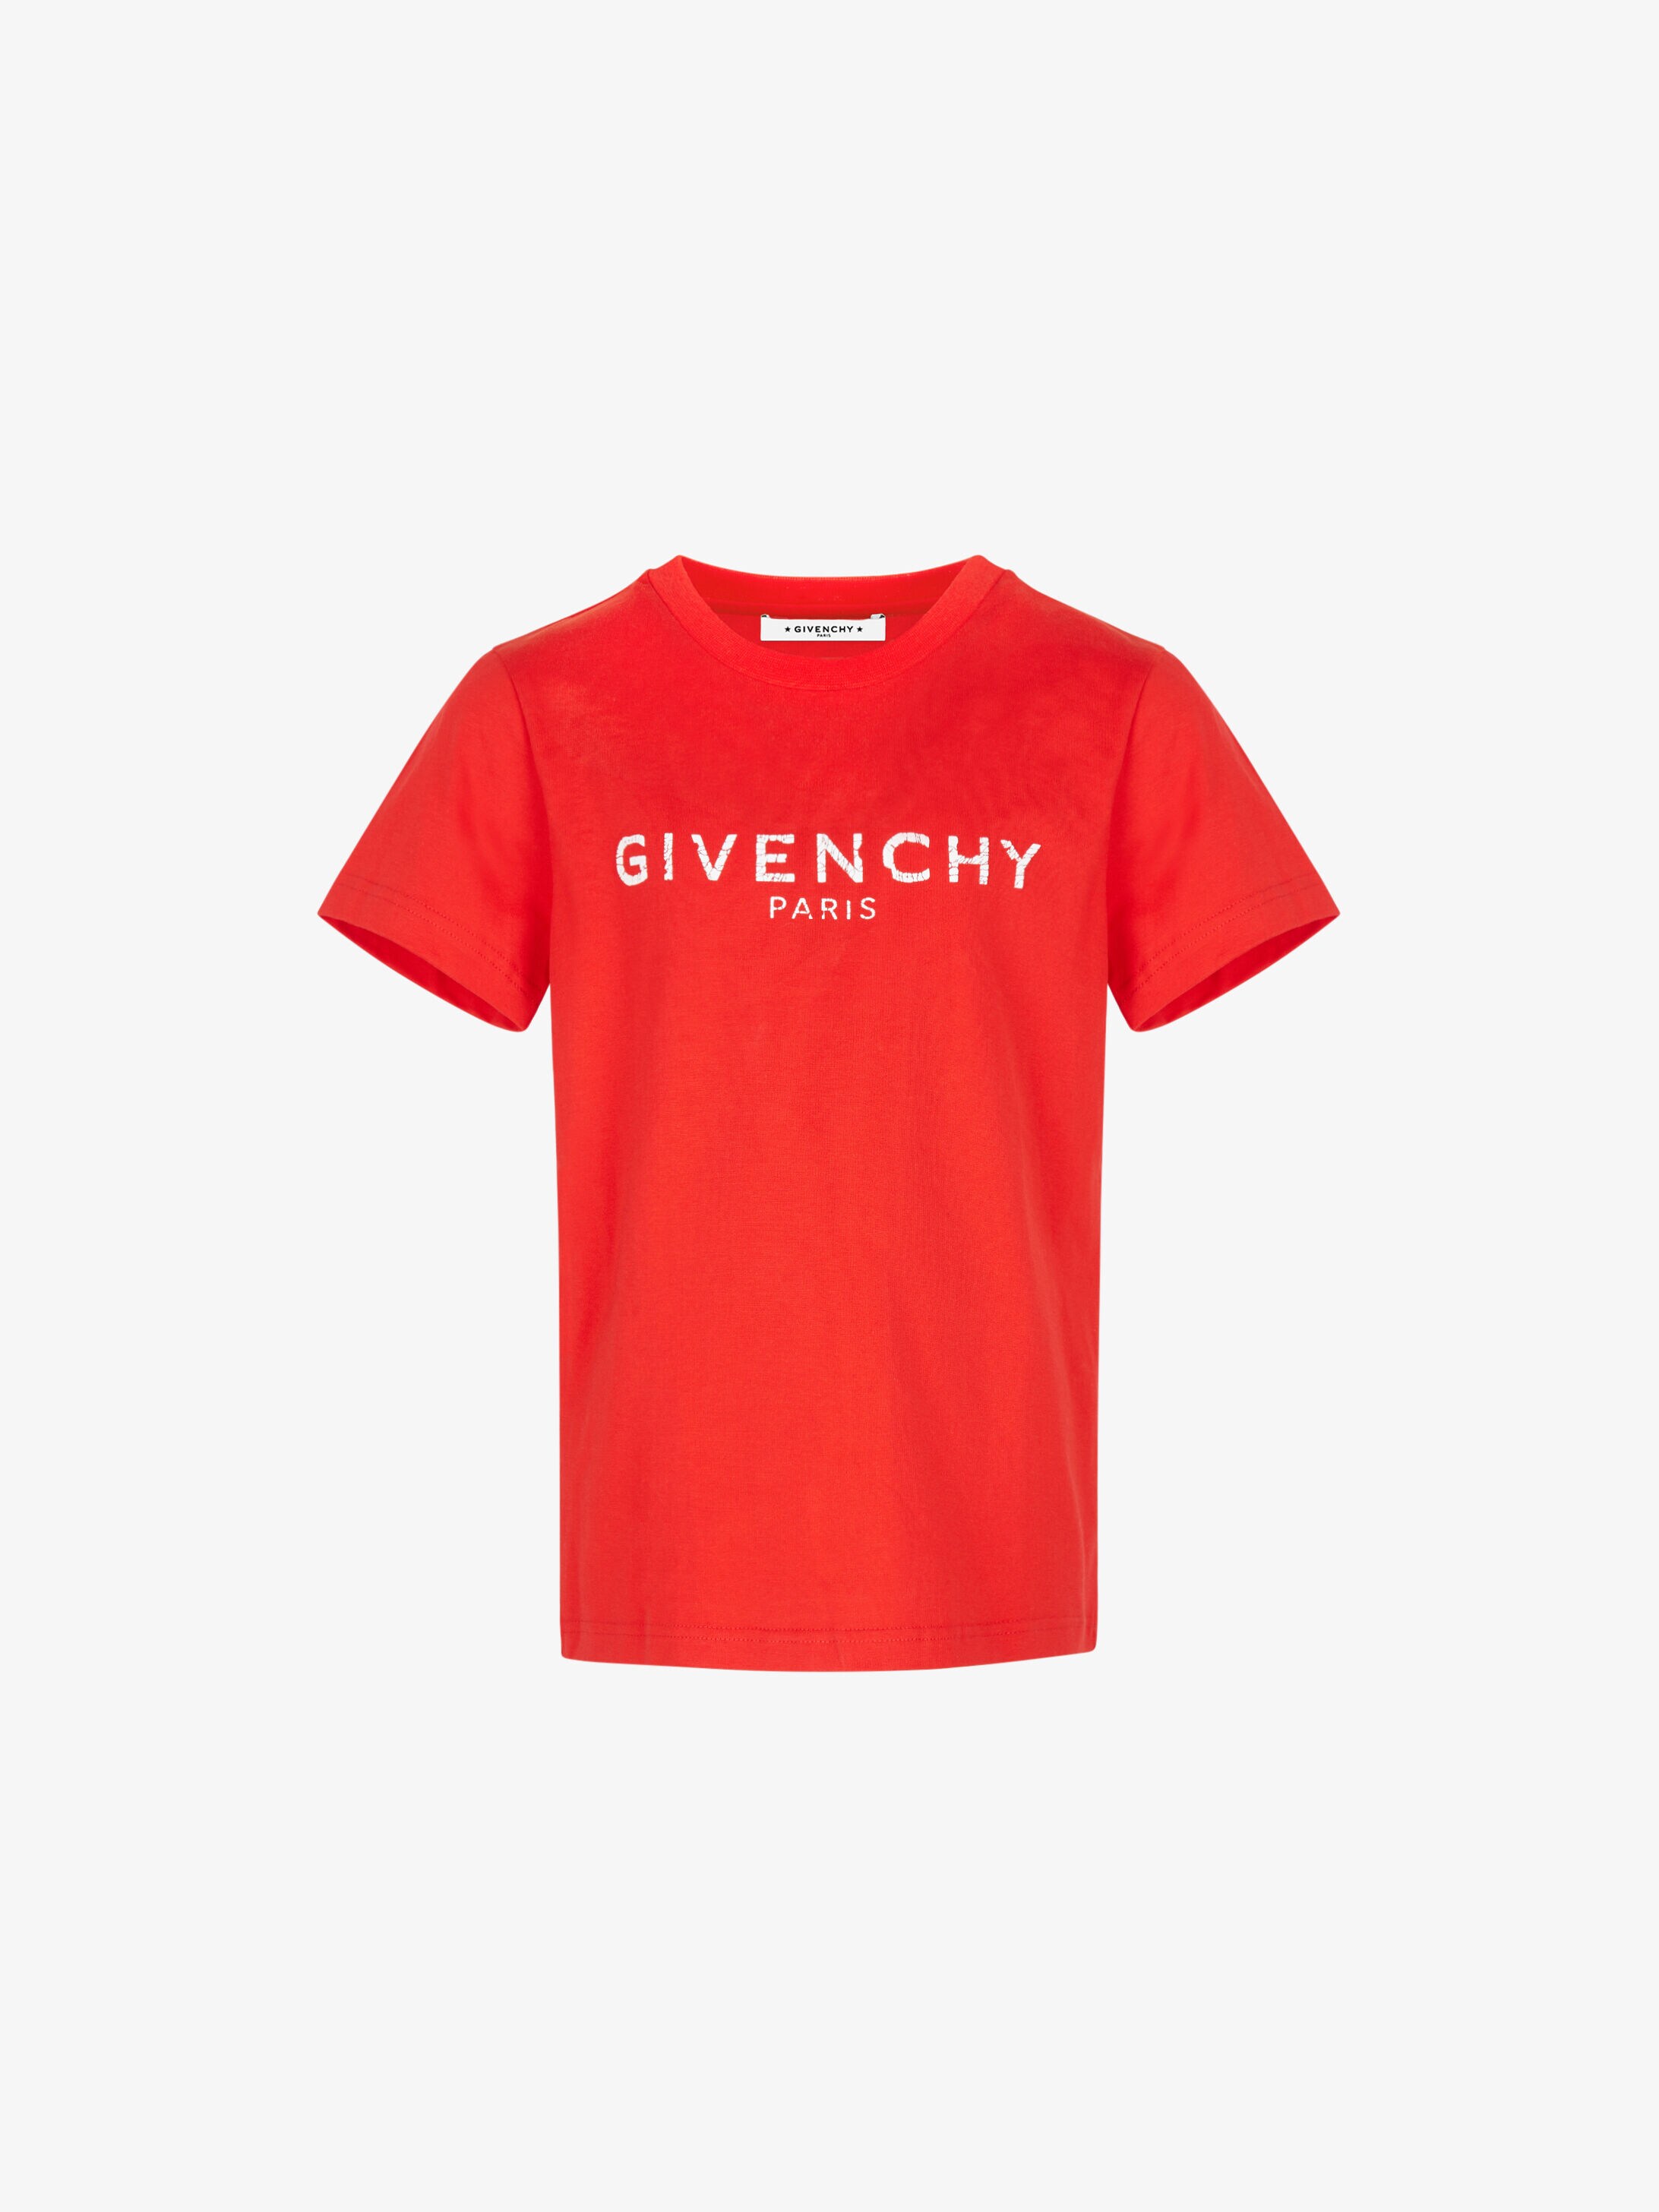 GIVENCHY printed t-shirt | GIVENCHY Paris